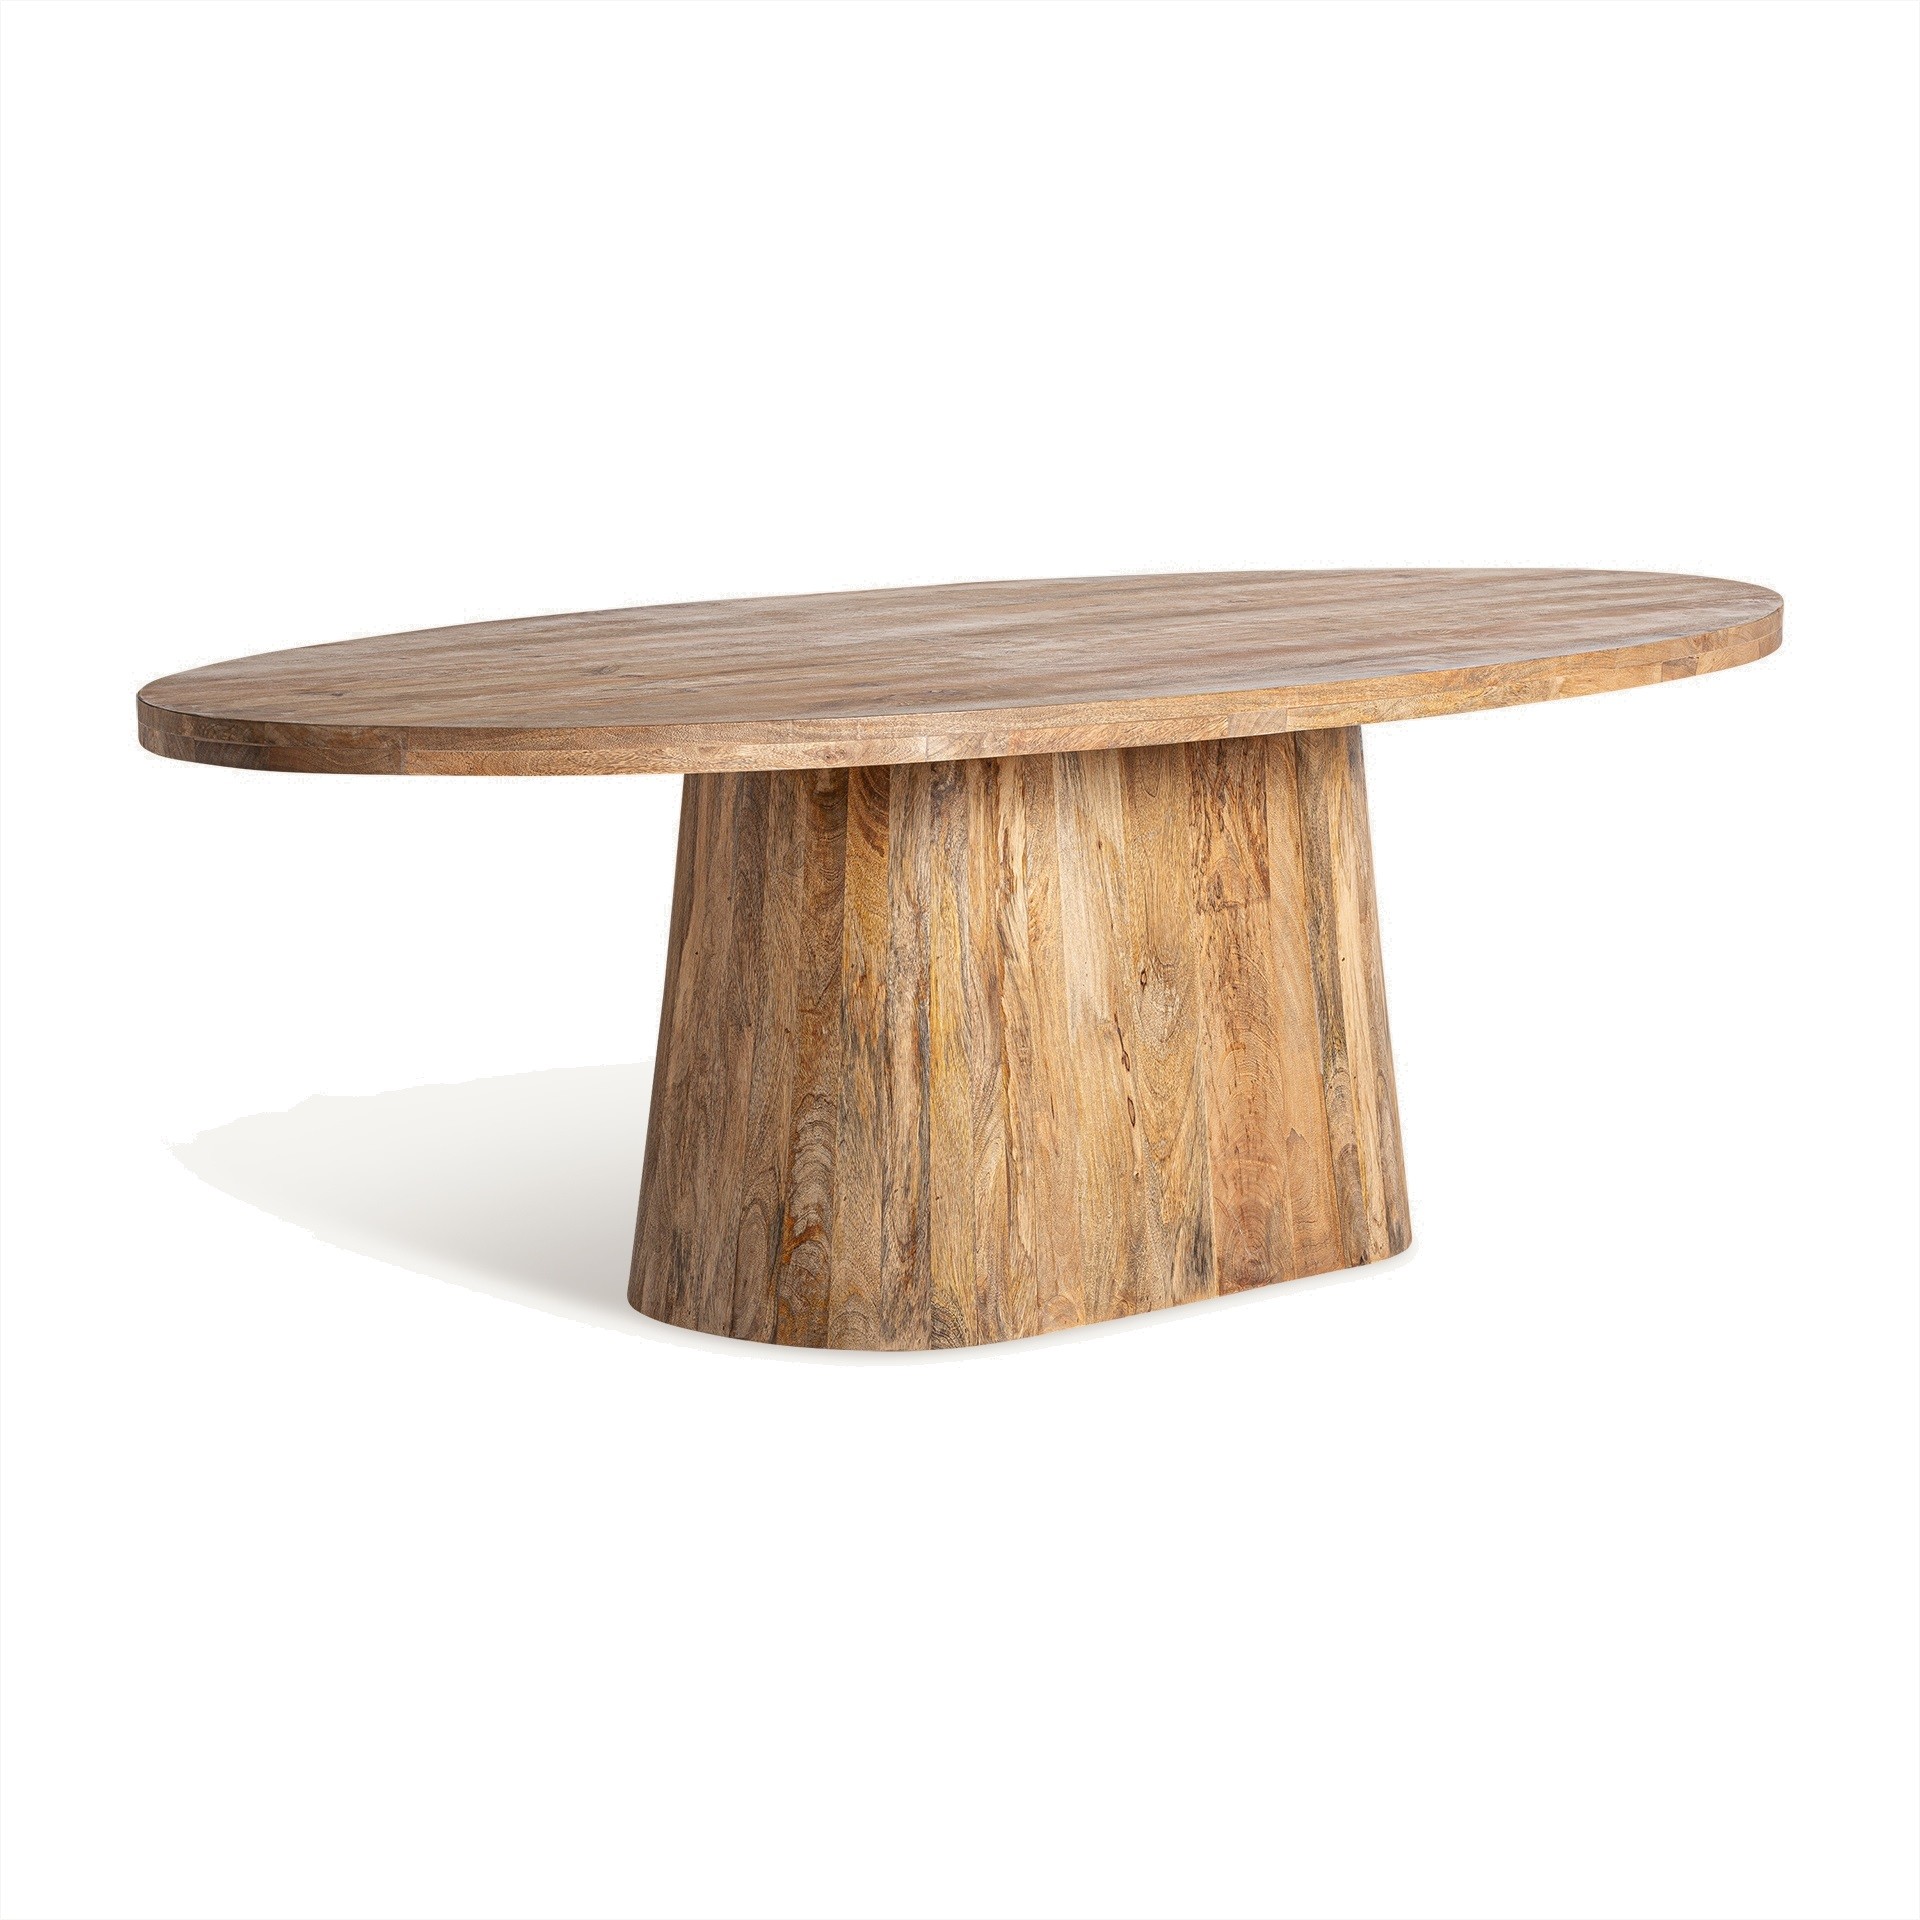 Estila Luxusní moderní konferenční stolek Malen ve venkovském stylu z masivního dřeva v hnědé barvě s oválnou podstavou 150 cm